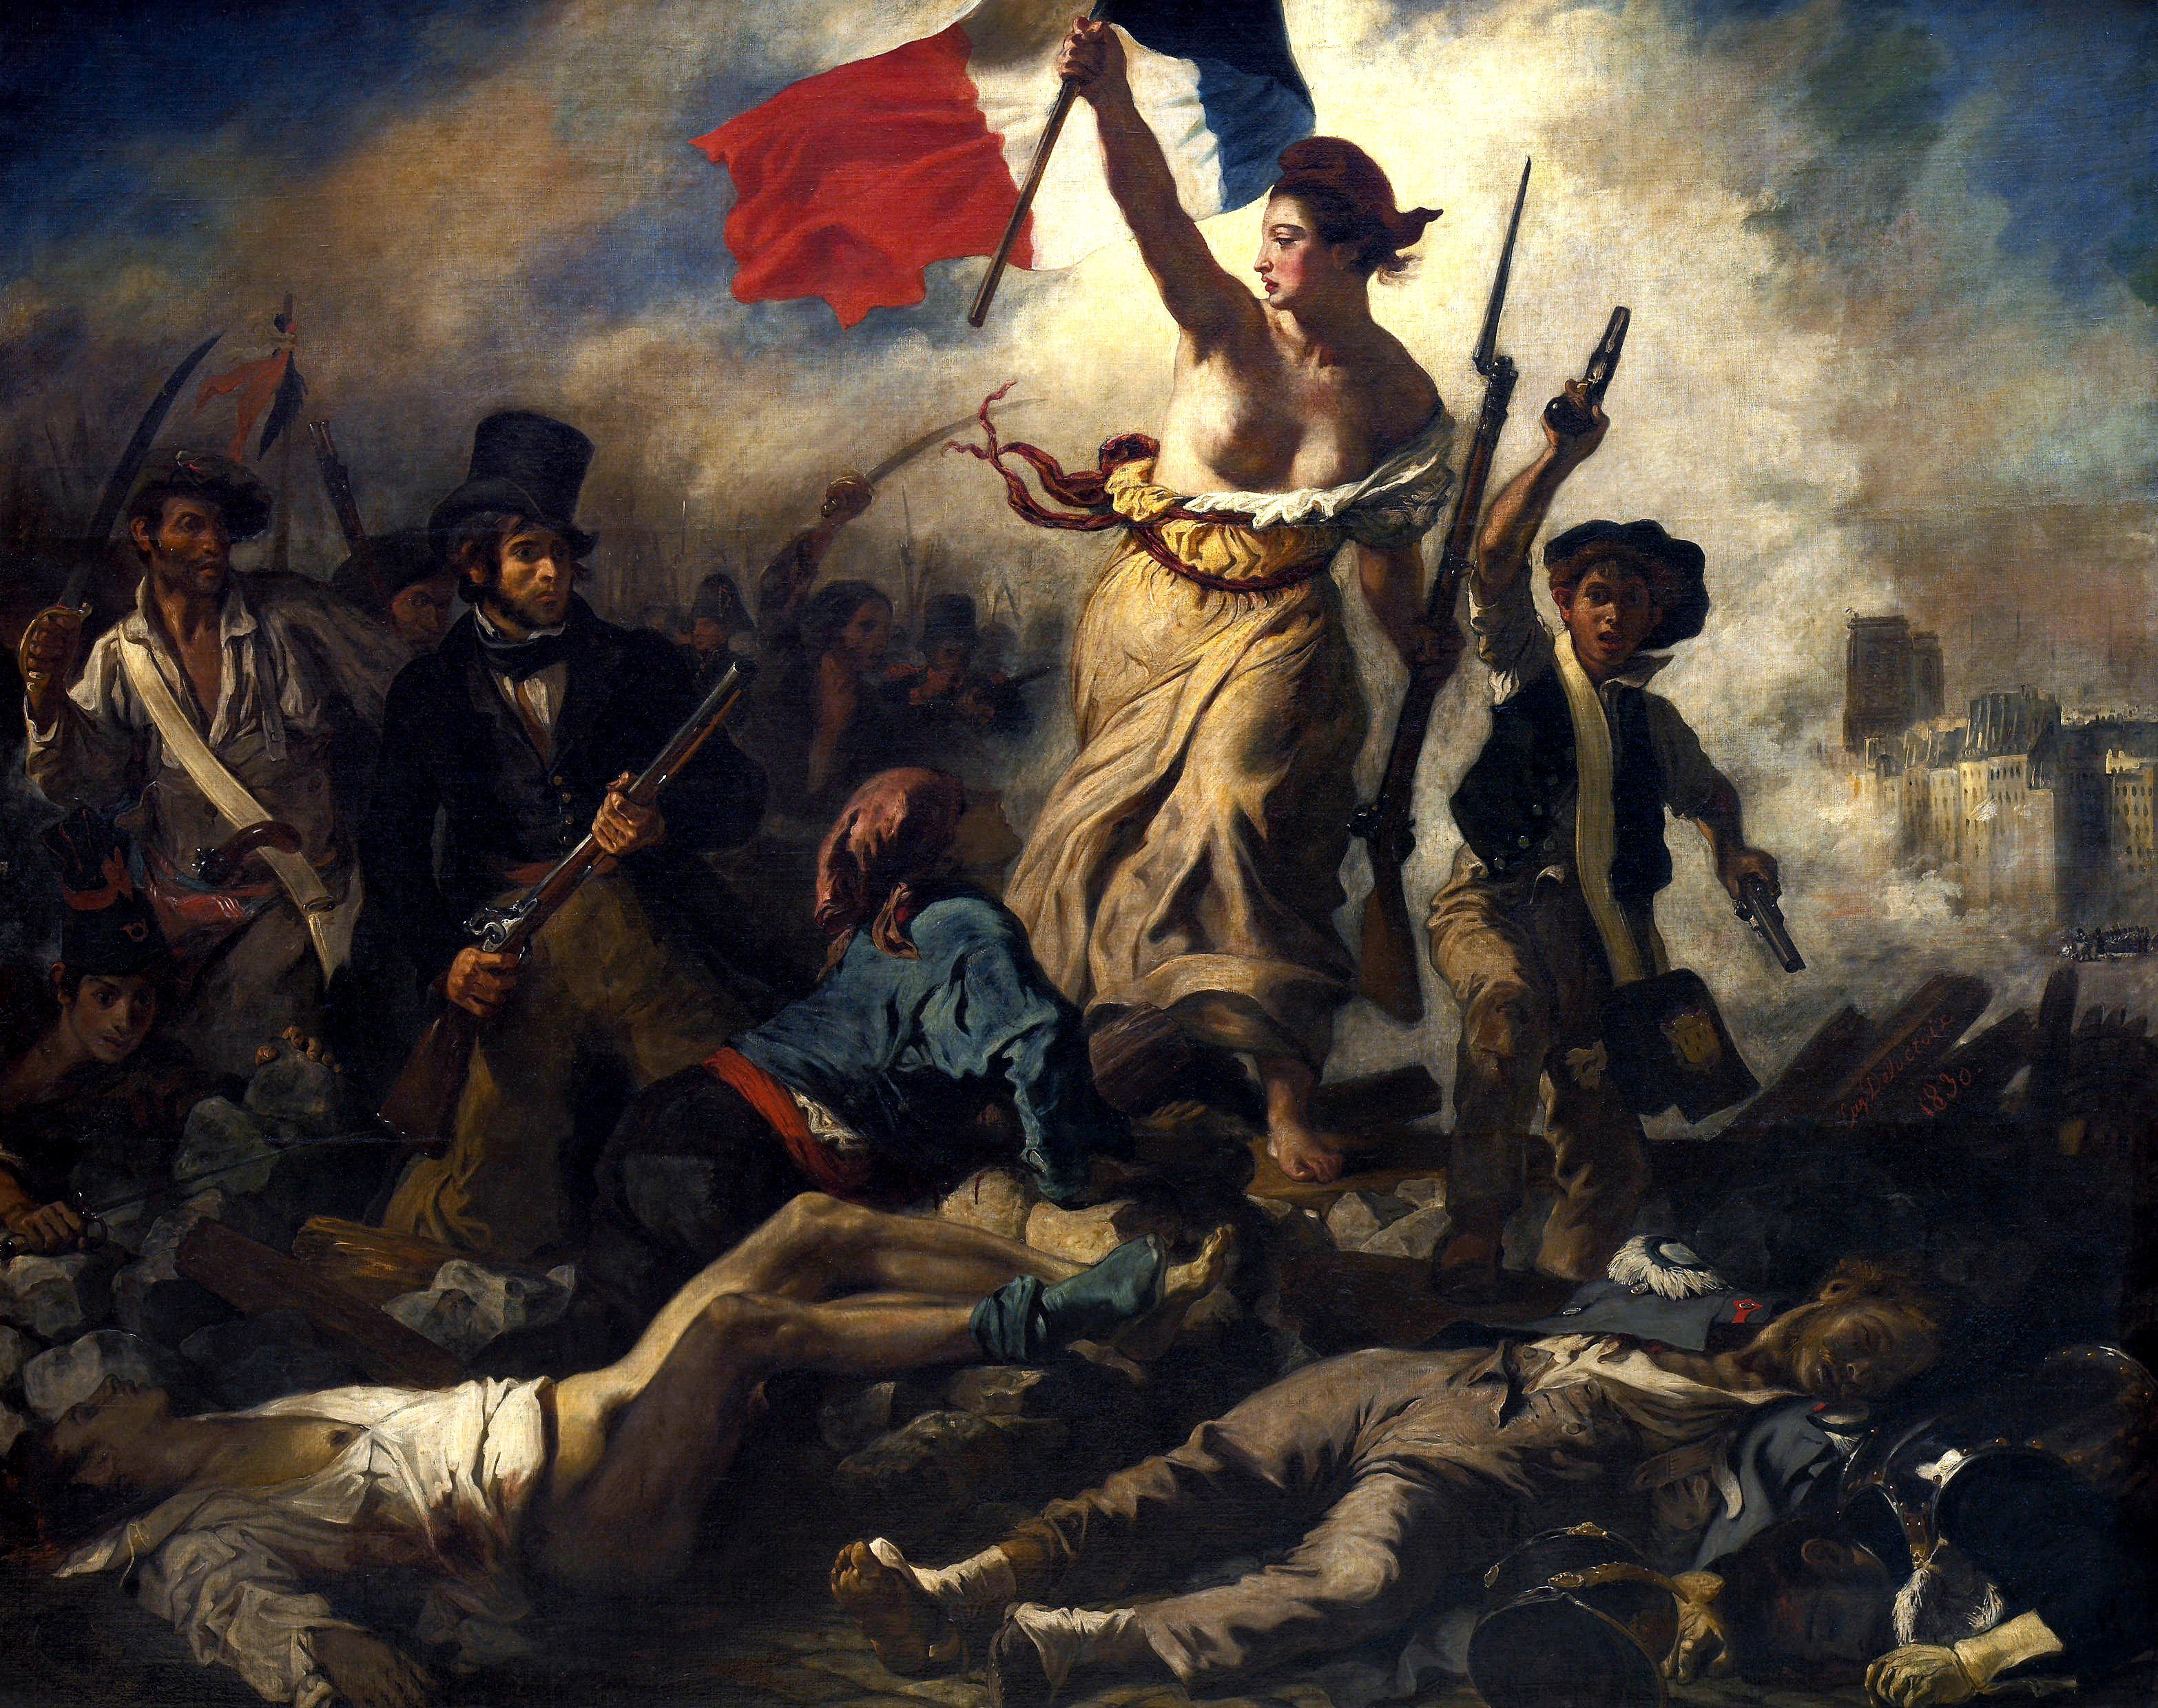 Détail de La Liberté guidant le peuple, par Eugène Delacroix (domaine public).